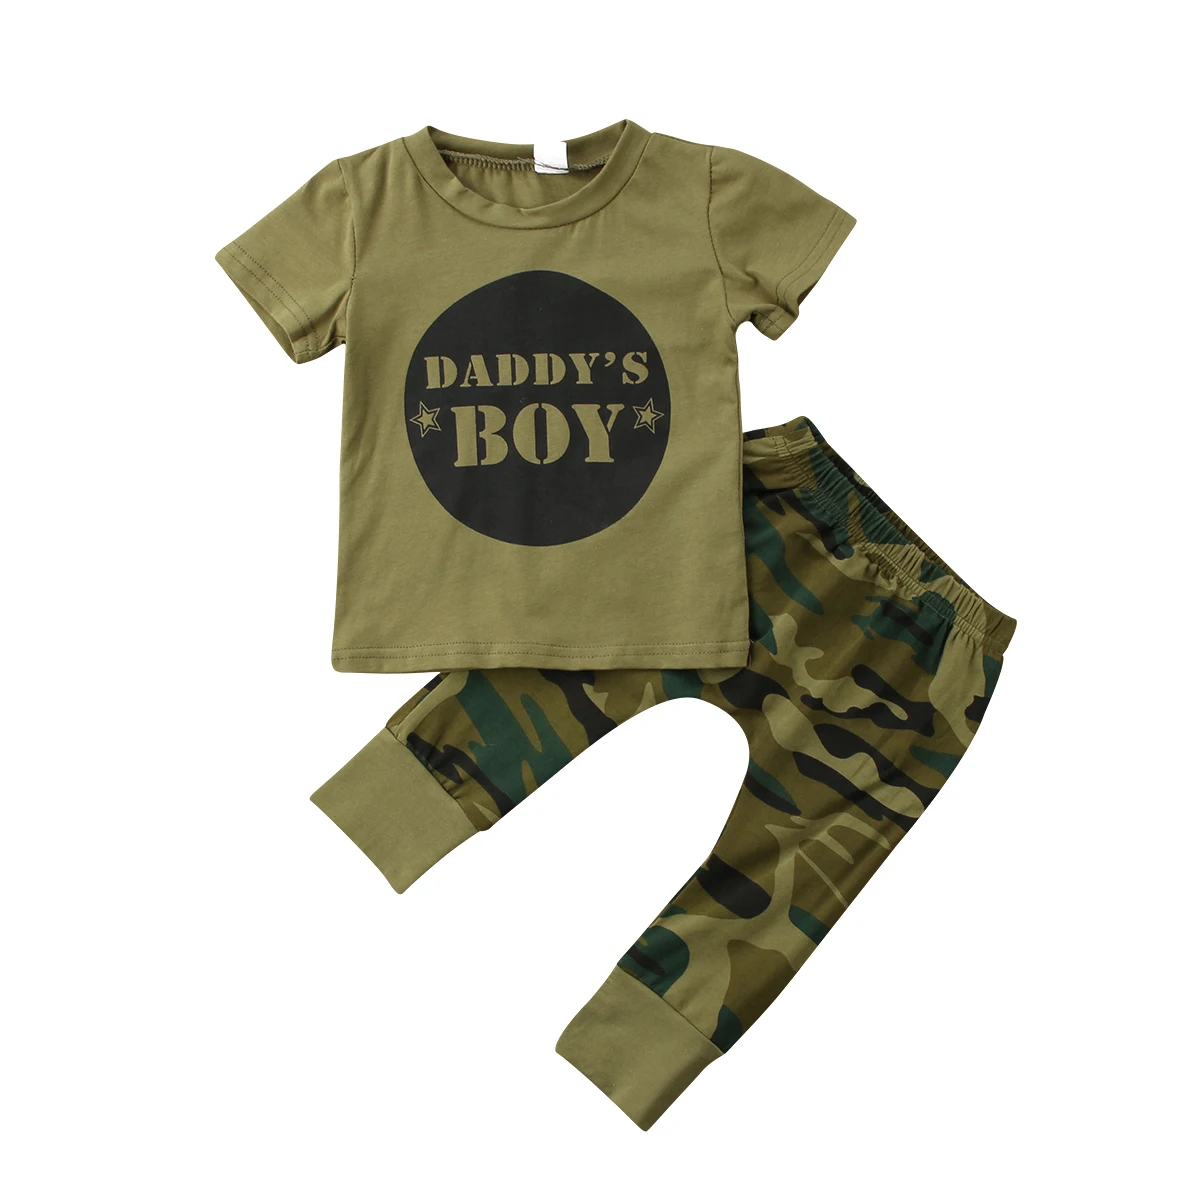 Камуфляжная футболка для новорожденных мальчиков и девочек, топы и штаны, комплект одежды для детей 0-24 месяцев